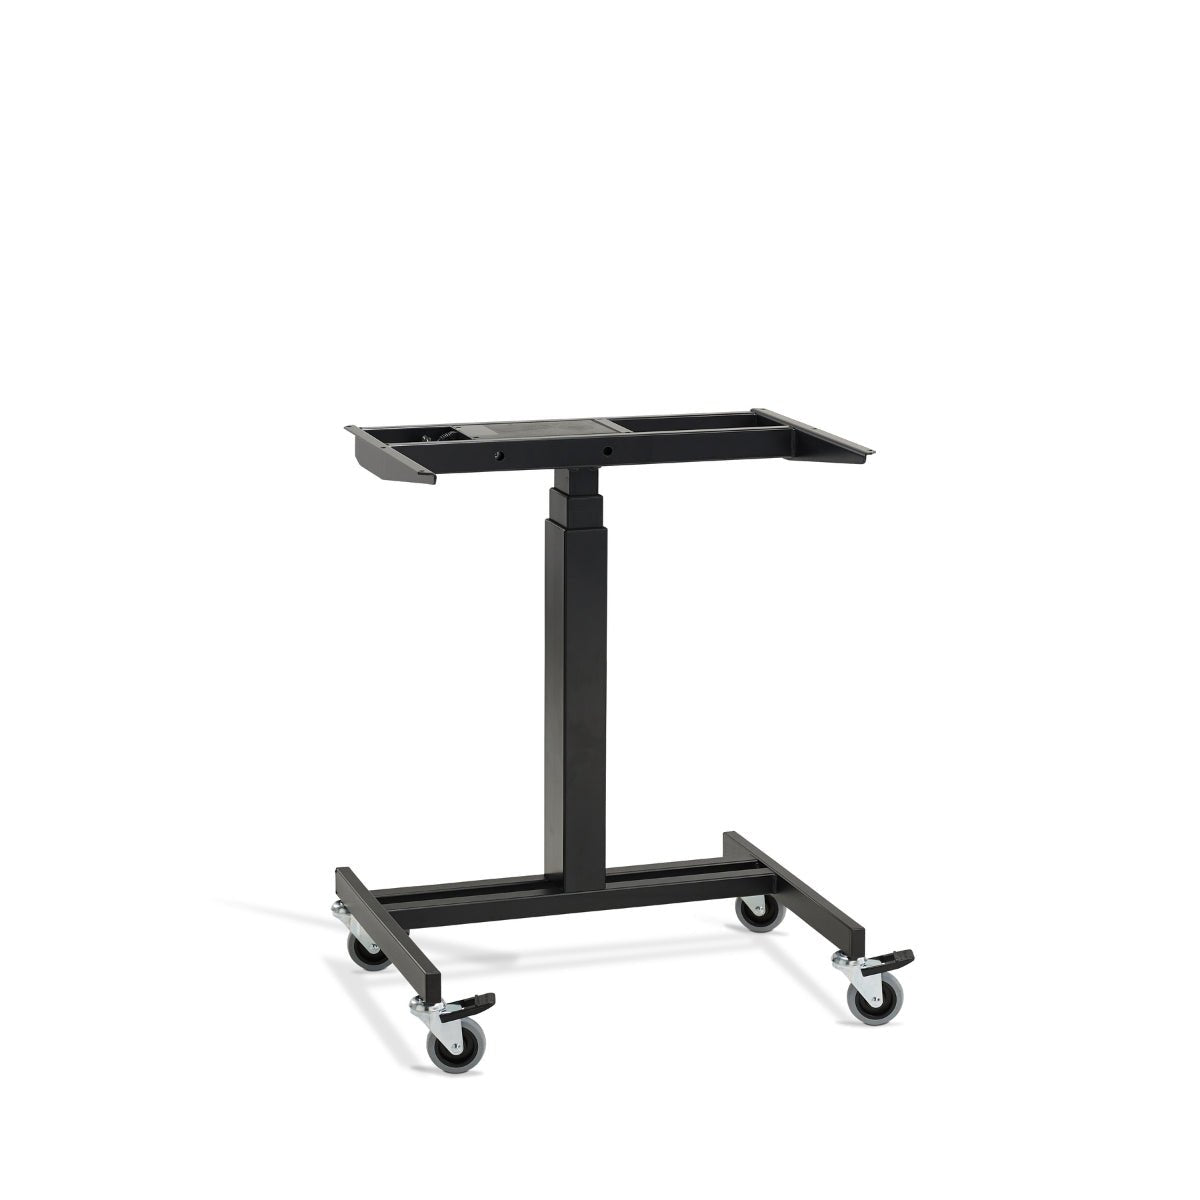 Single Leg Standing Desk Frame in Black